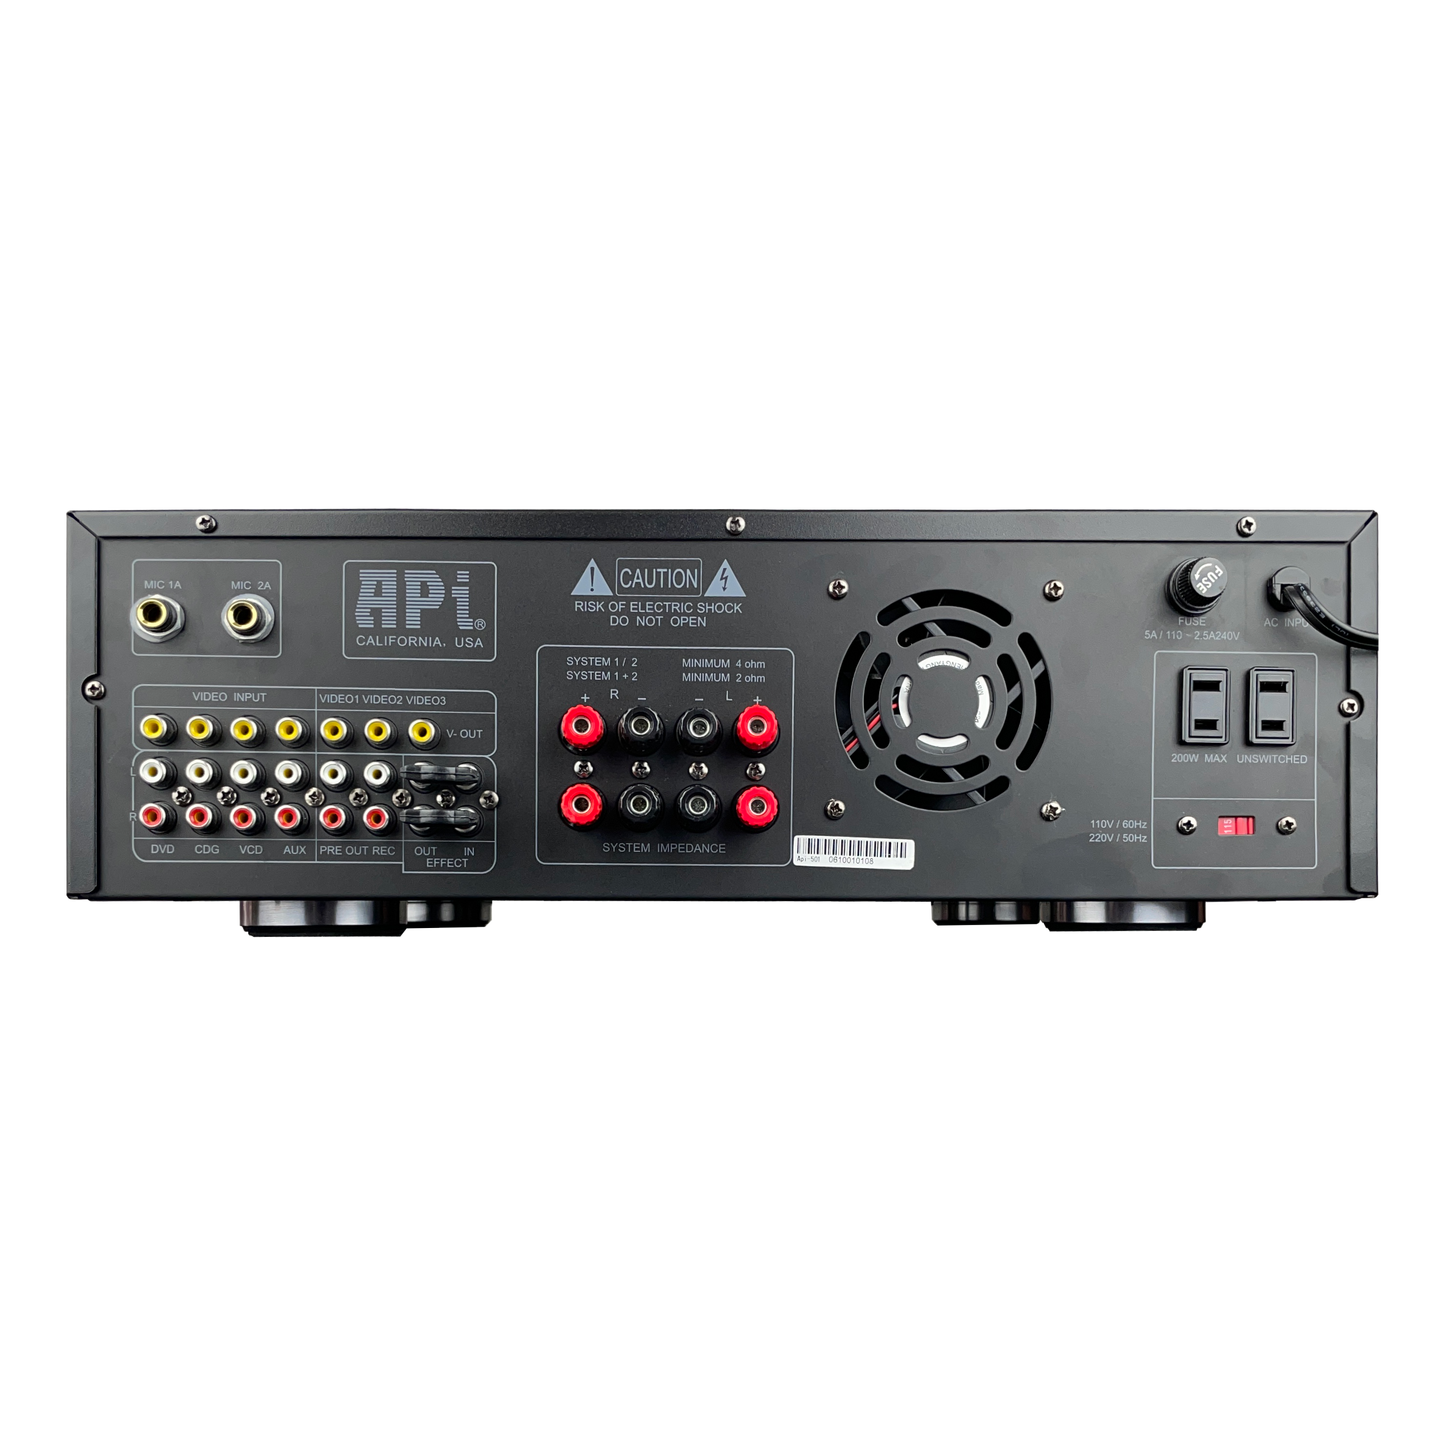 APi A-501 400W Karaoke Mixing Amplifier